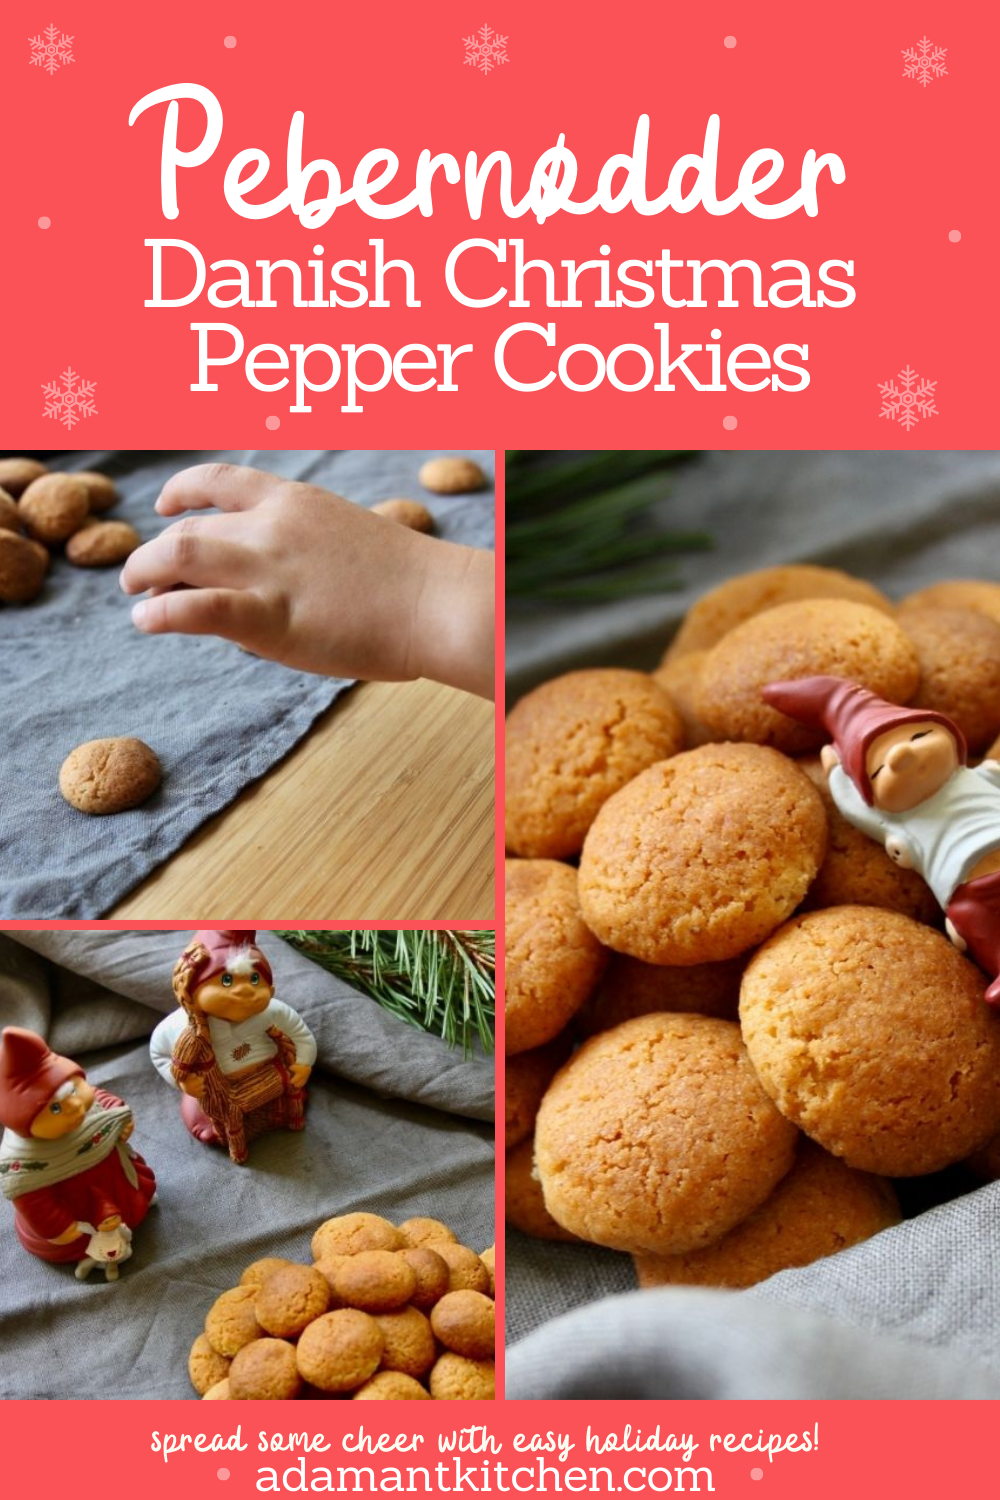 丹麦Pebernødder ~学习如何让这个传统北欧从头圣诞饼干。